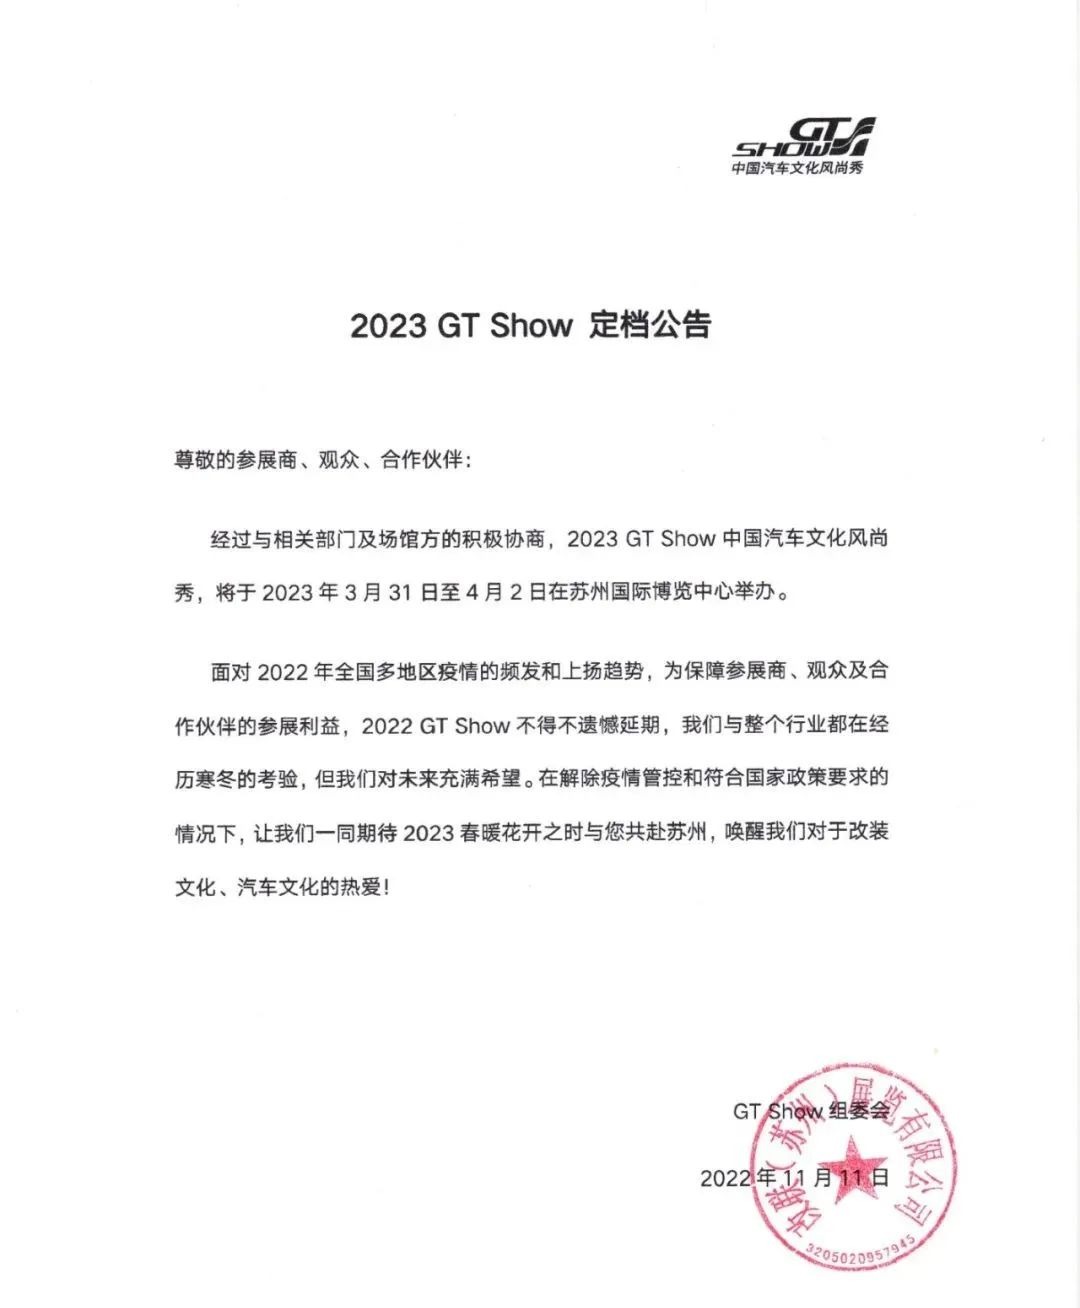 2023 GT Show 定档